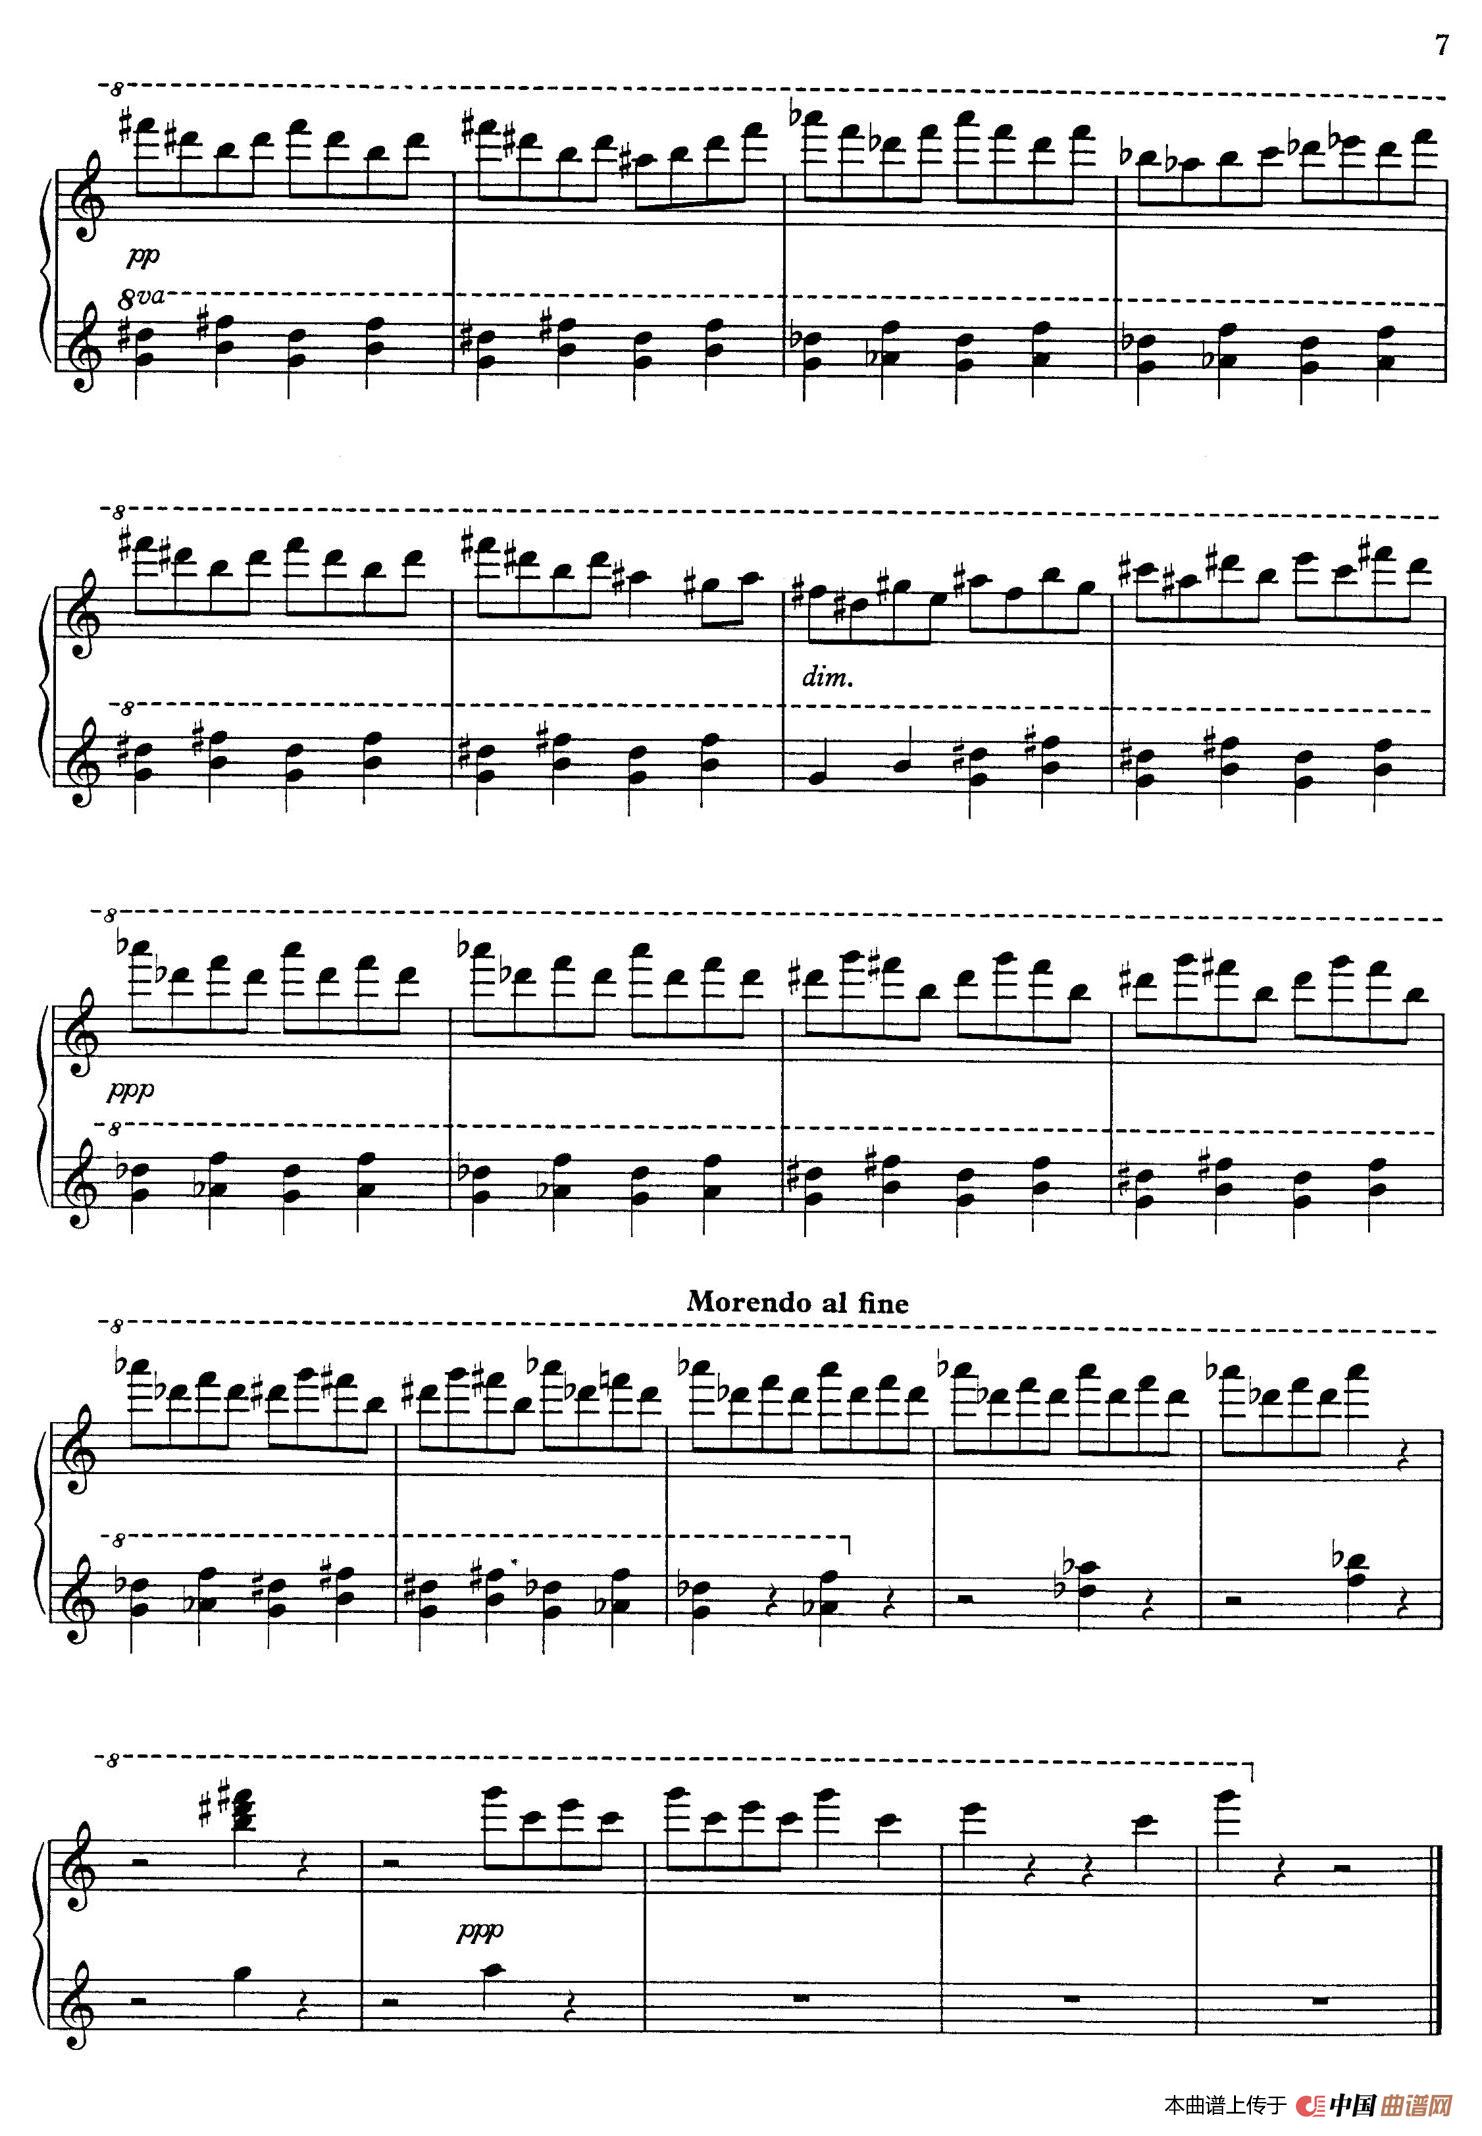 《Toccata for Piano H.153》钢琴曲谱图分享